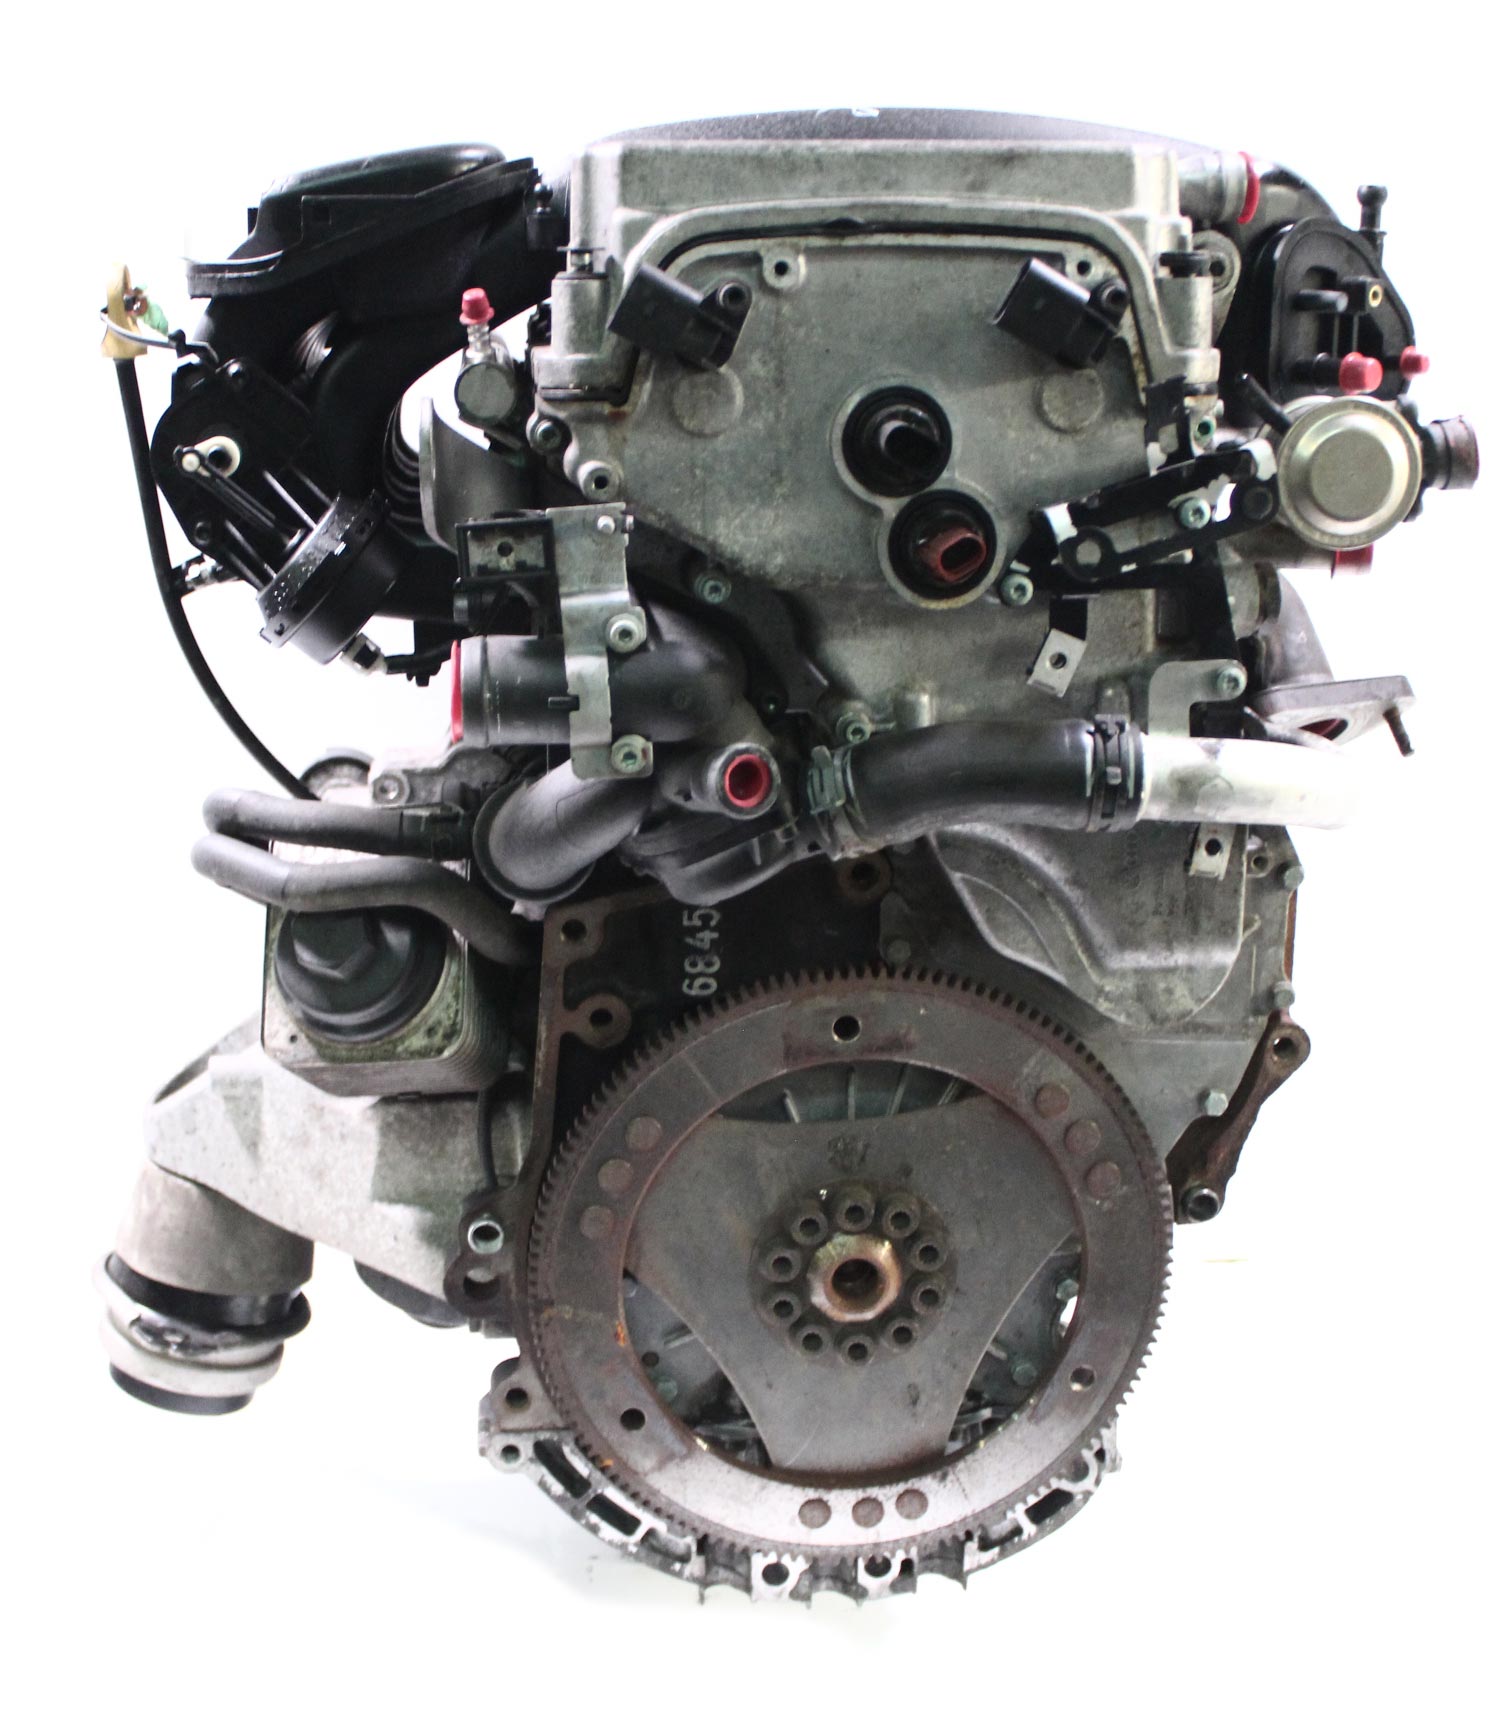 Engine 2005 Porsche Cayenne 3.2 VR6 gasoline BFD 250 HP